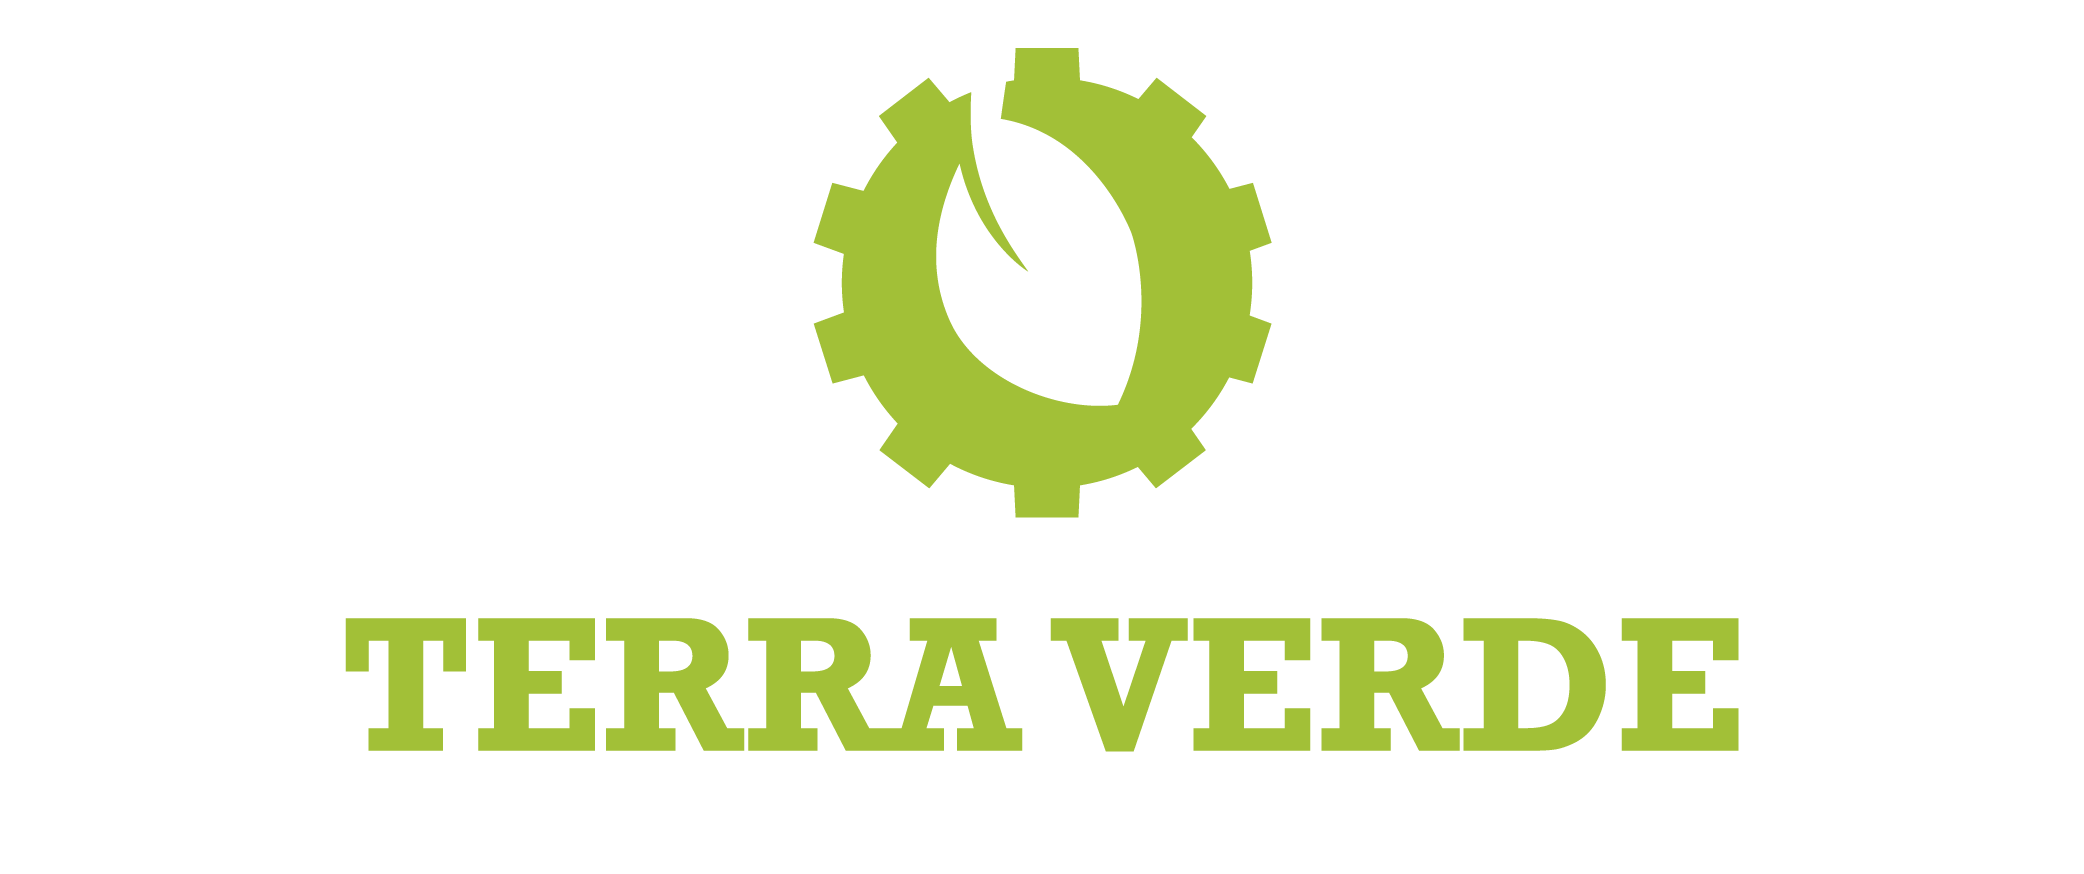 Logo: Associação Terra Verde